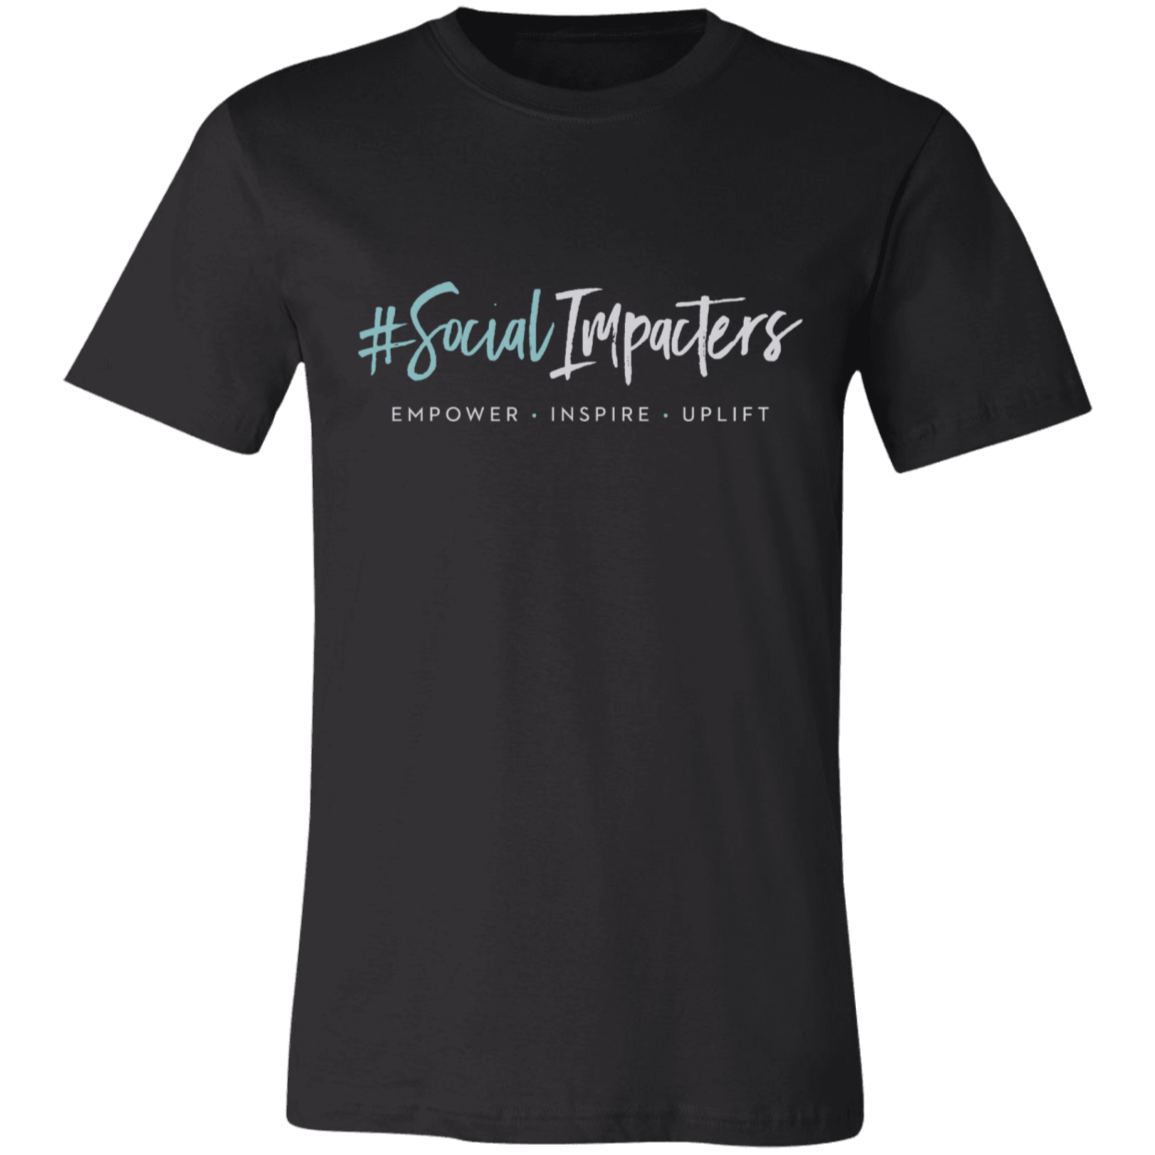 Social Impacters - Premium Cotton T-Shirt